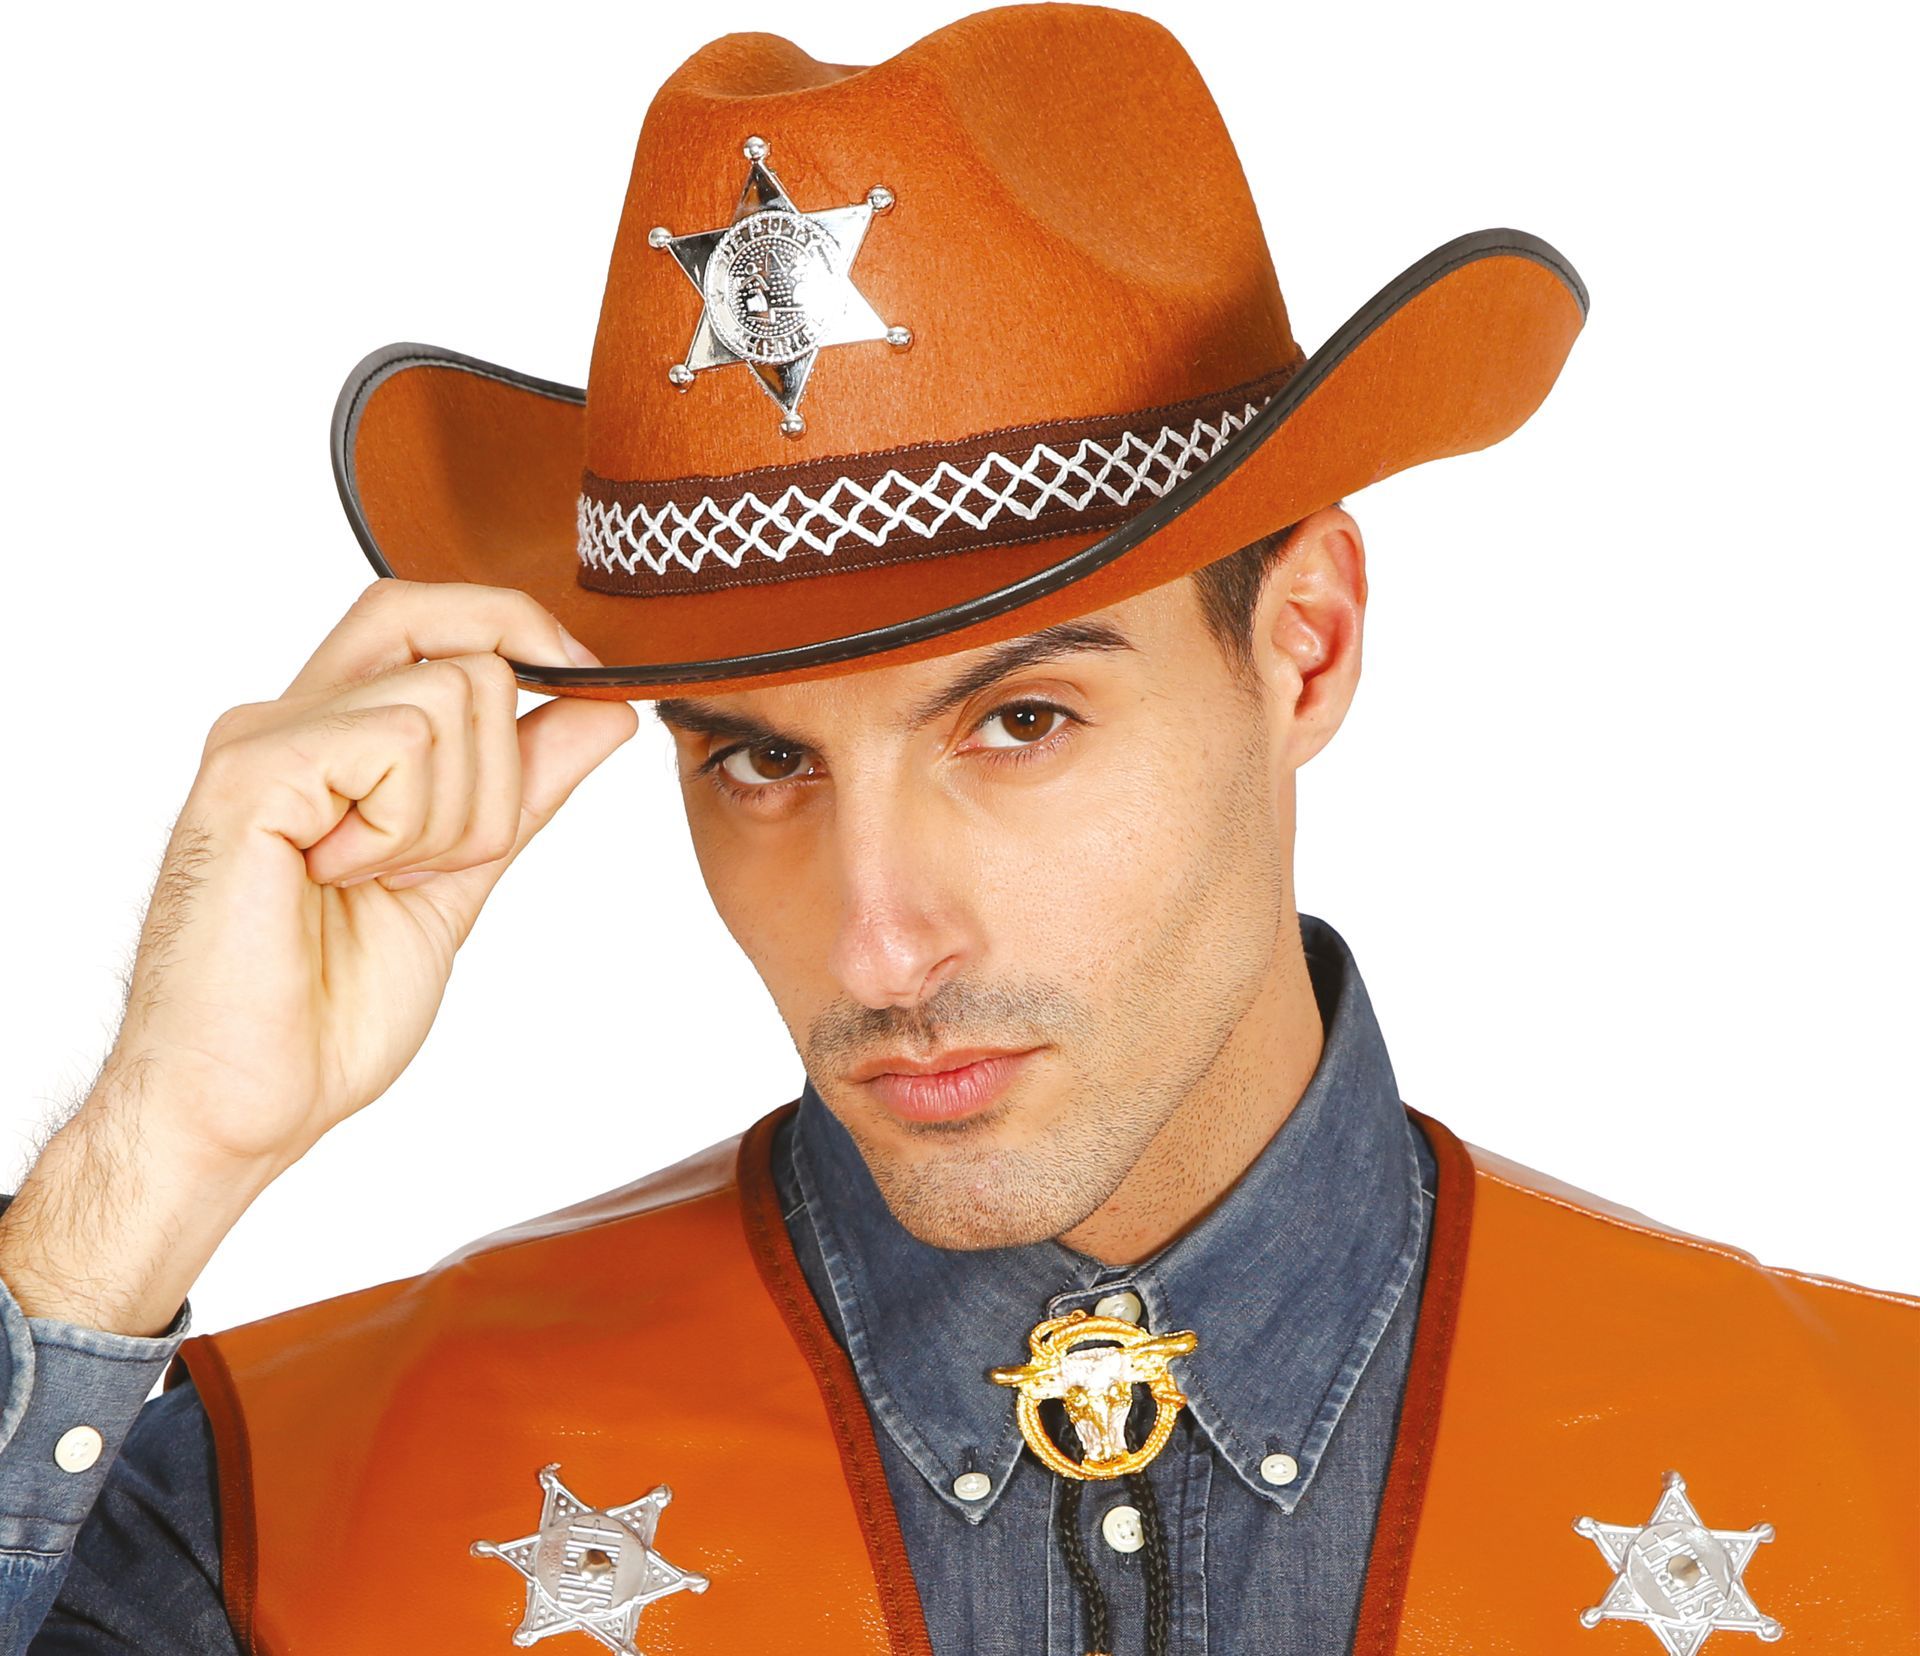 Bruine cowboy sheriff hoed